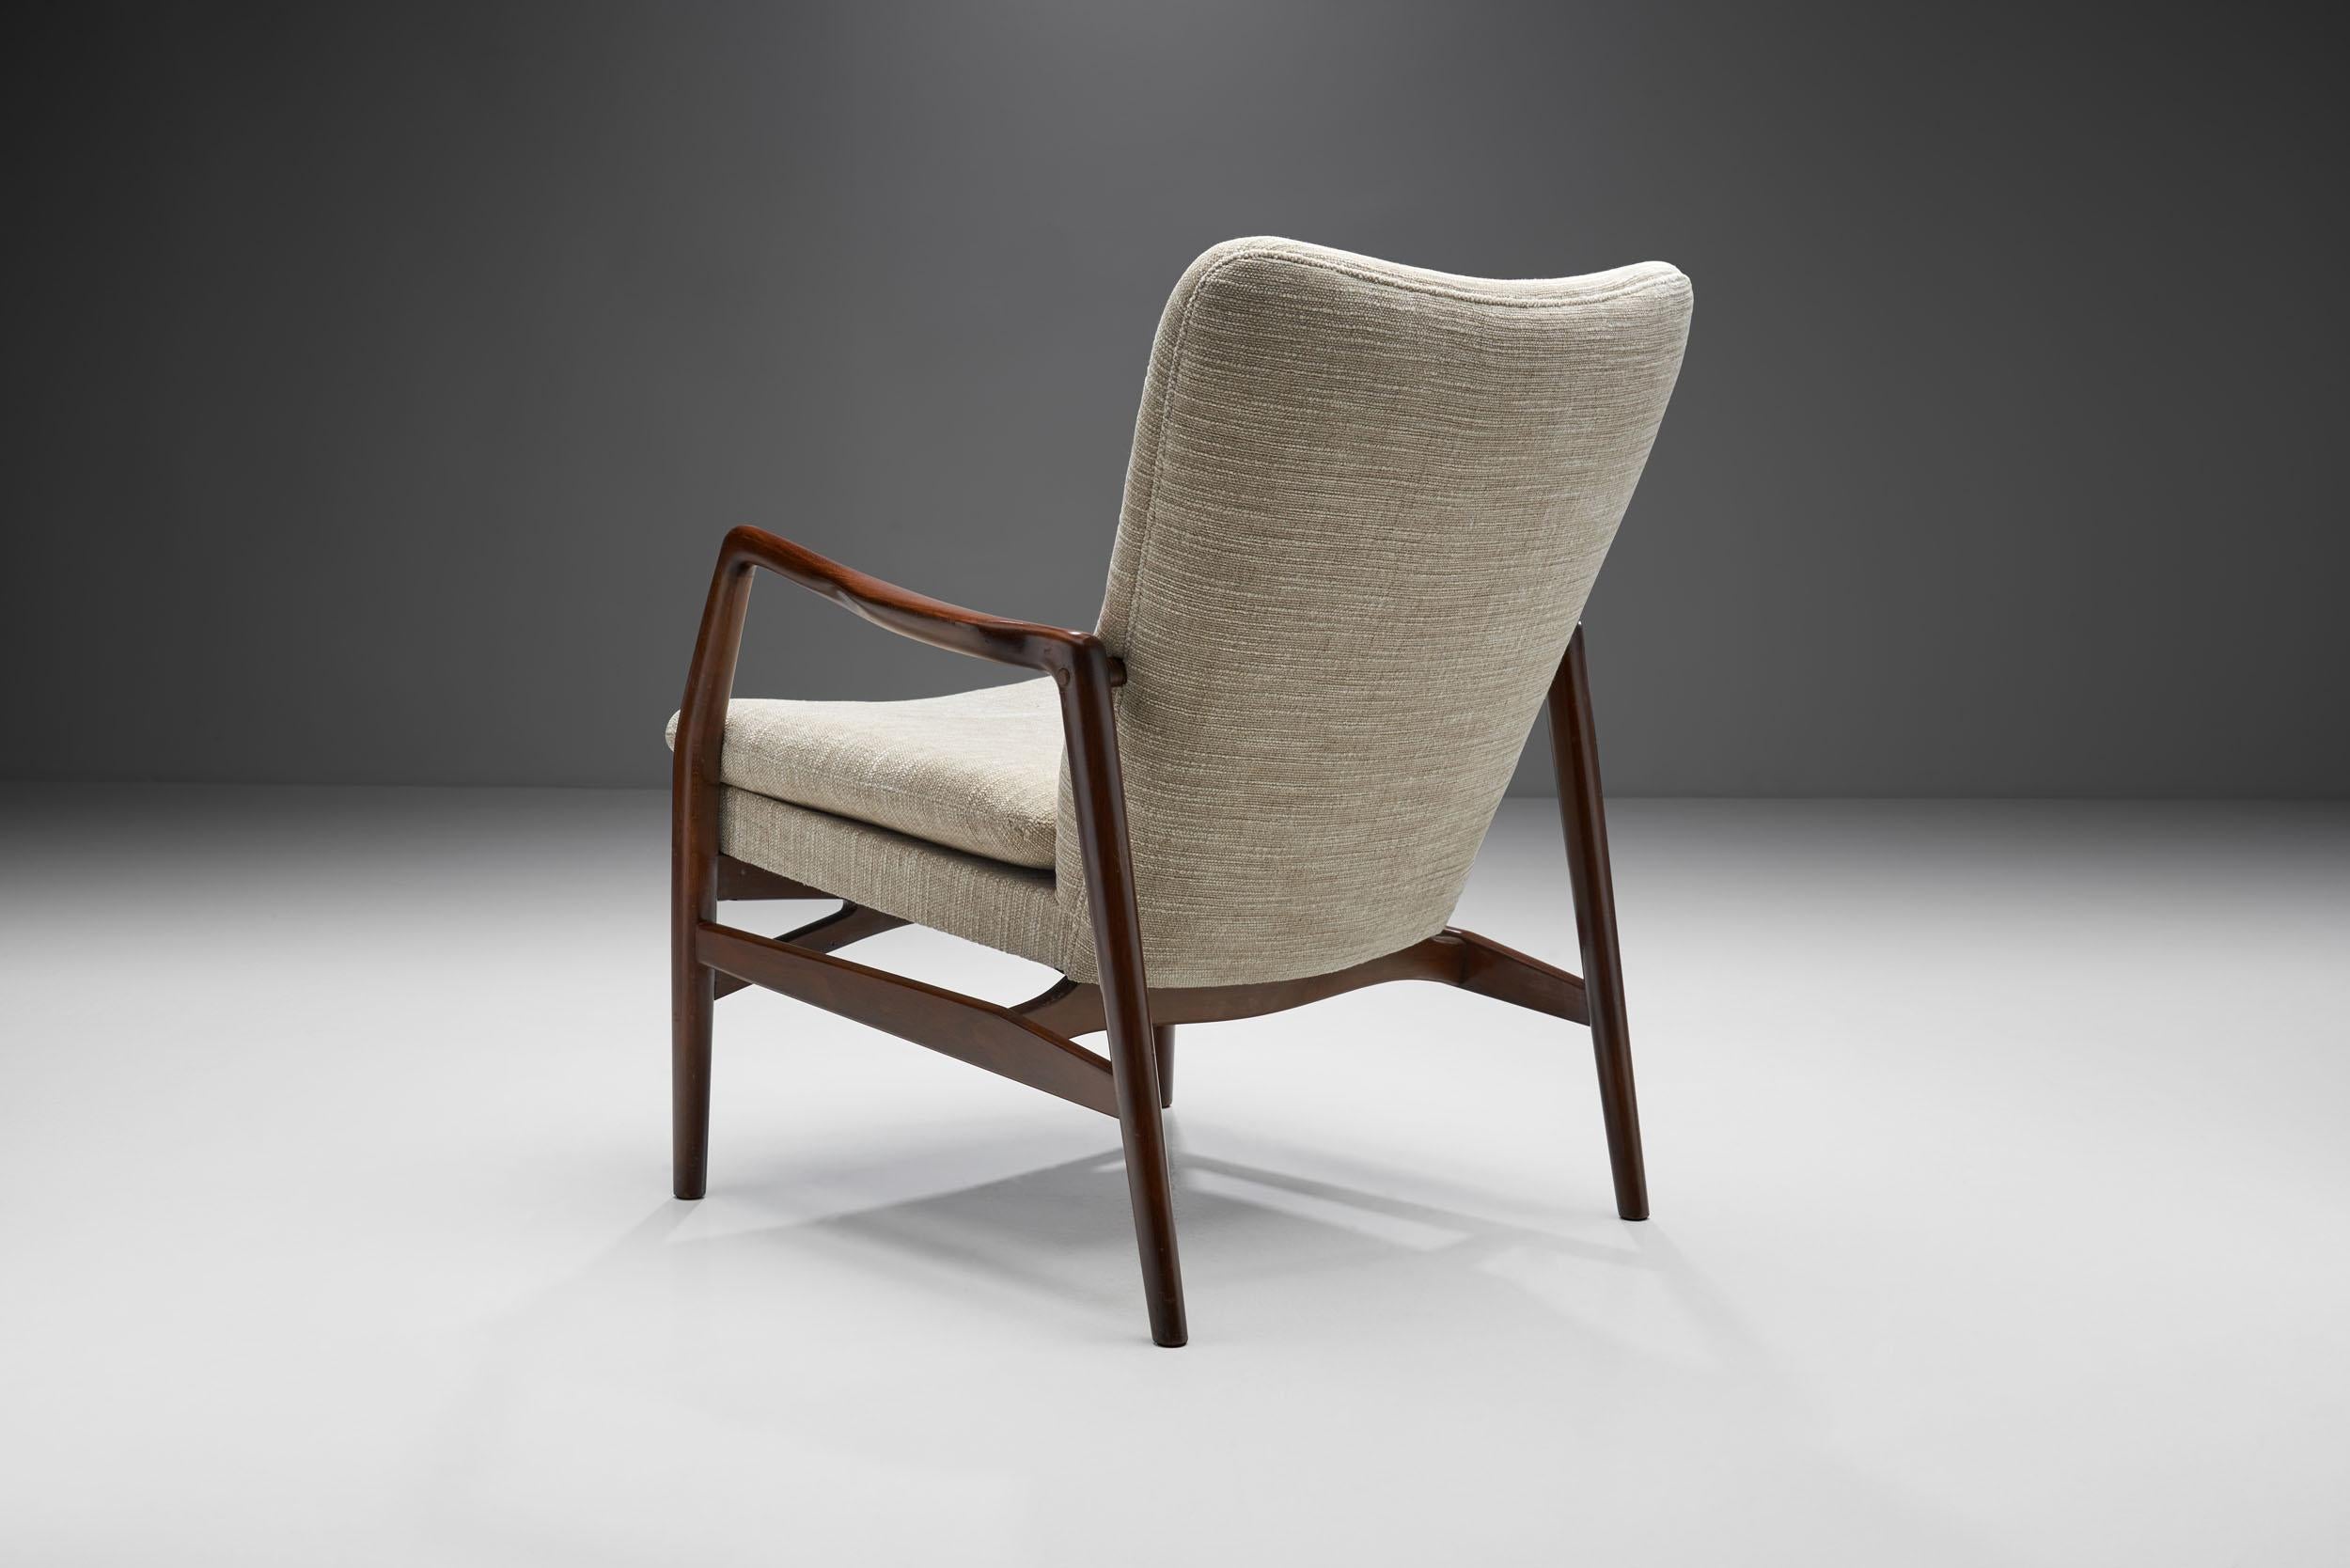 Mid-20th Century Kurt Olsen “Model 215” Easy Chairs for Slagelse Møbelværk, Denmark, 1950s